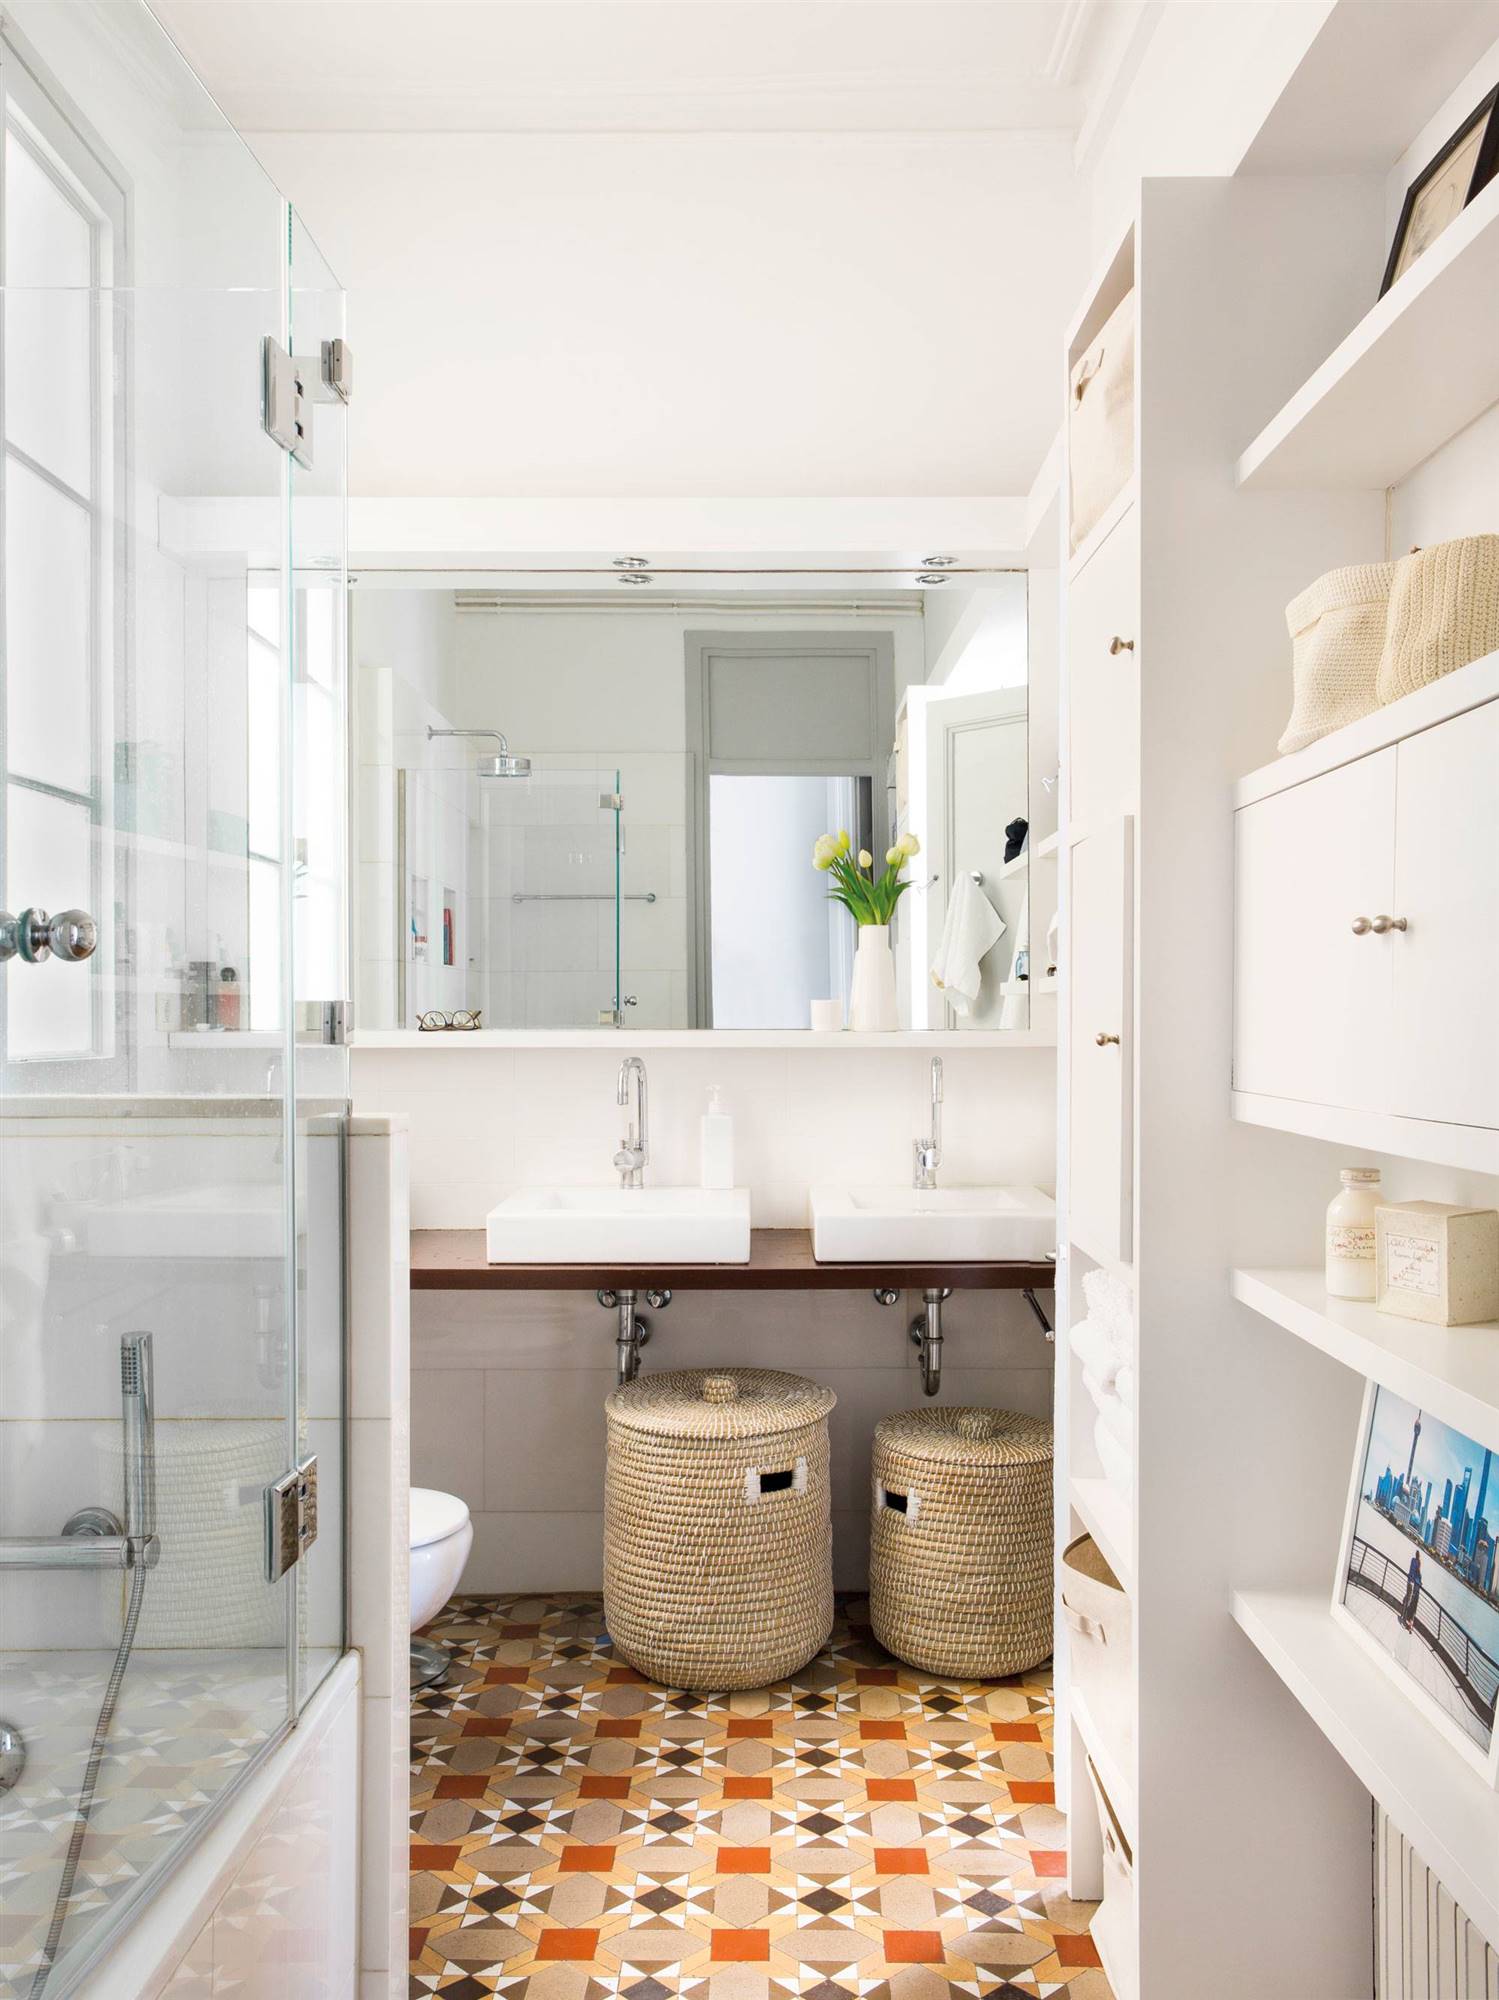 Baño con muebles blancos y suelo de mosaico hidráulico.